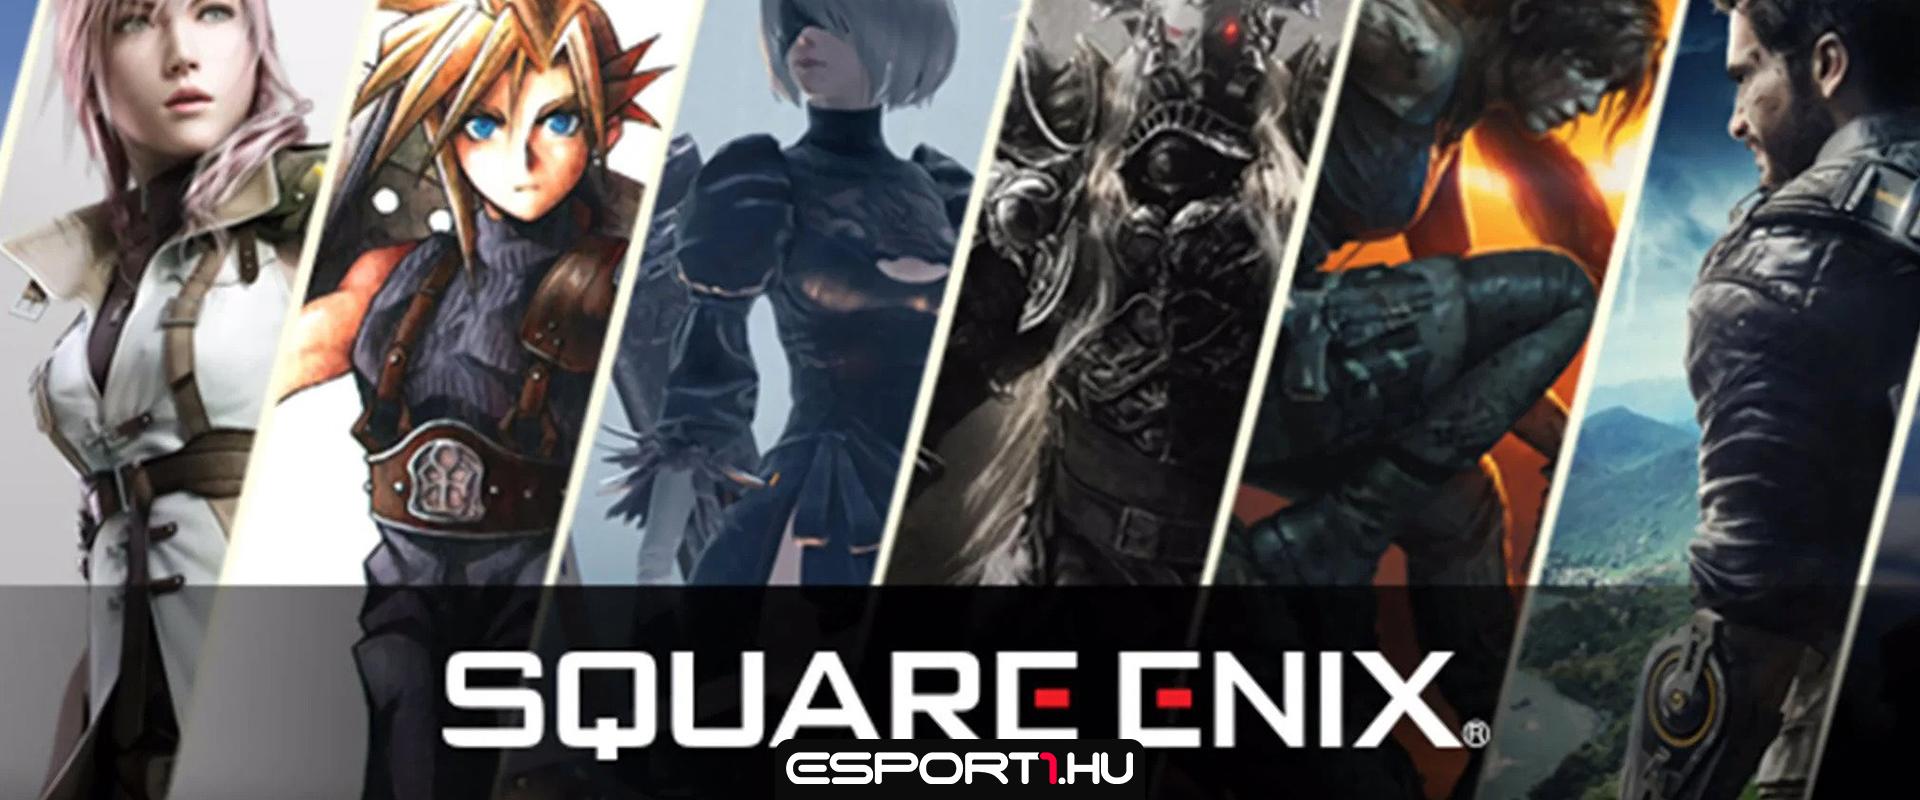 Pletykák szerint a Sony felvásárolhatja a Square Enix csapatát